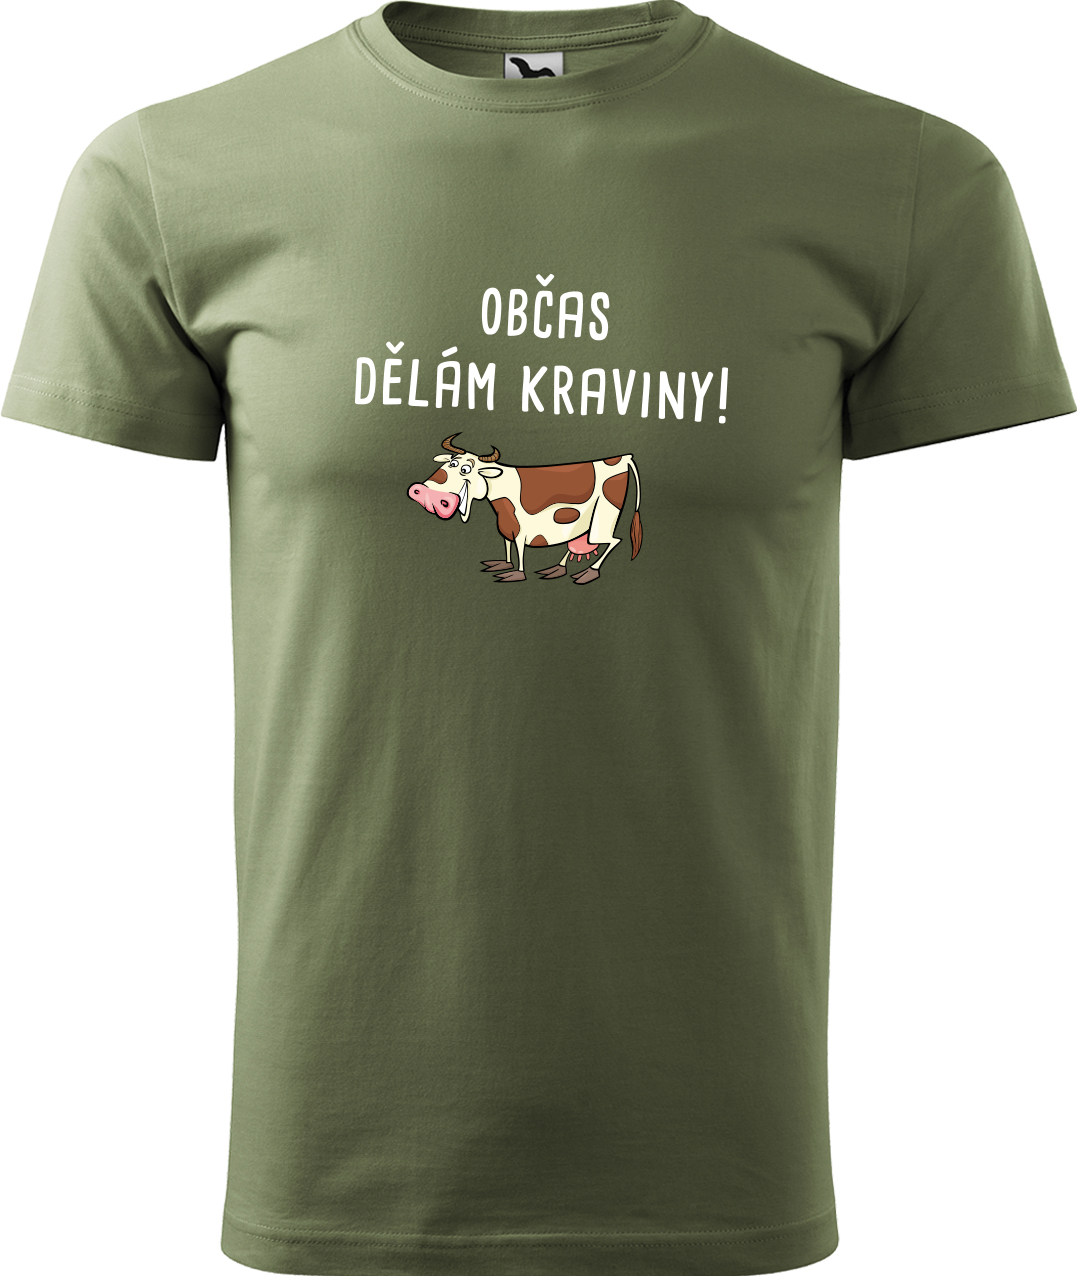 Pánské tričko s krávou - Občas dělám kraviny Velikost: S, Barva: Světlá khaki (28), Střih: pánský